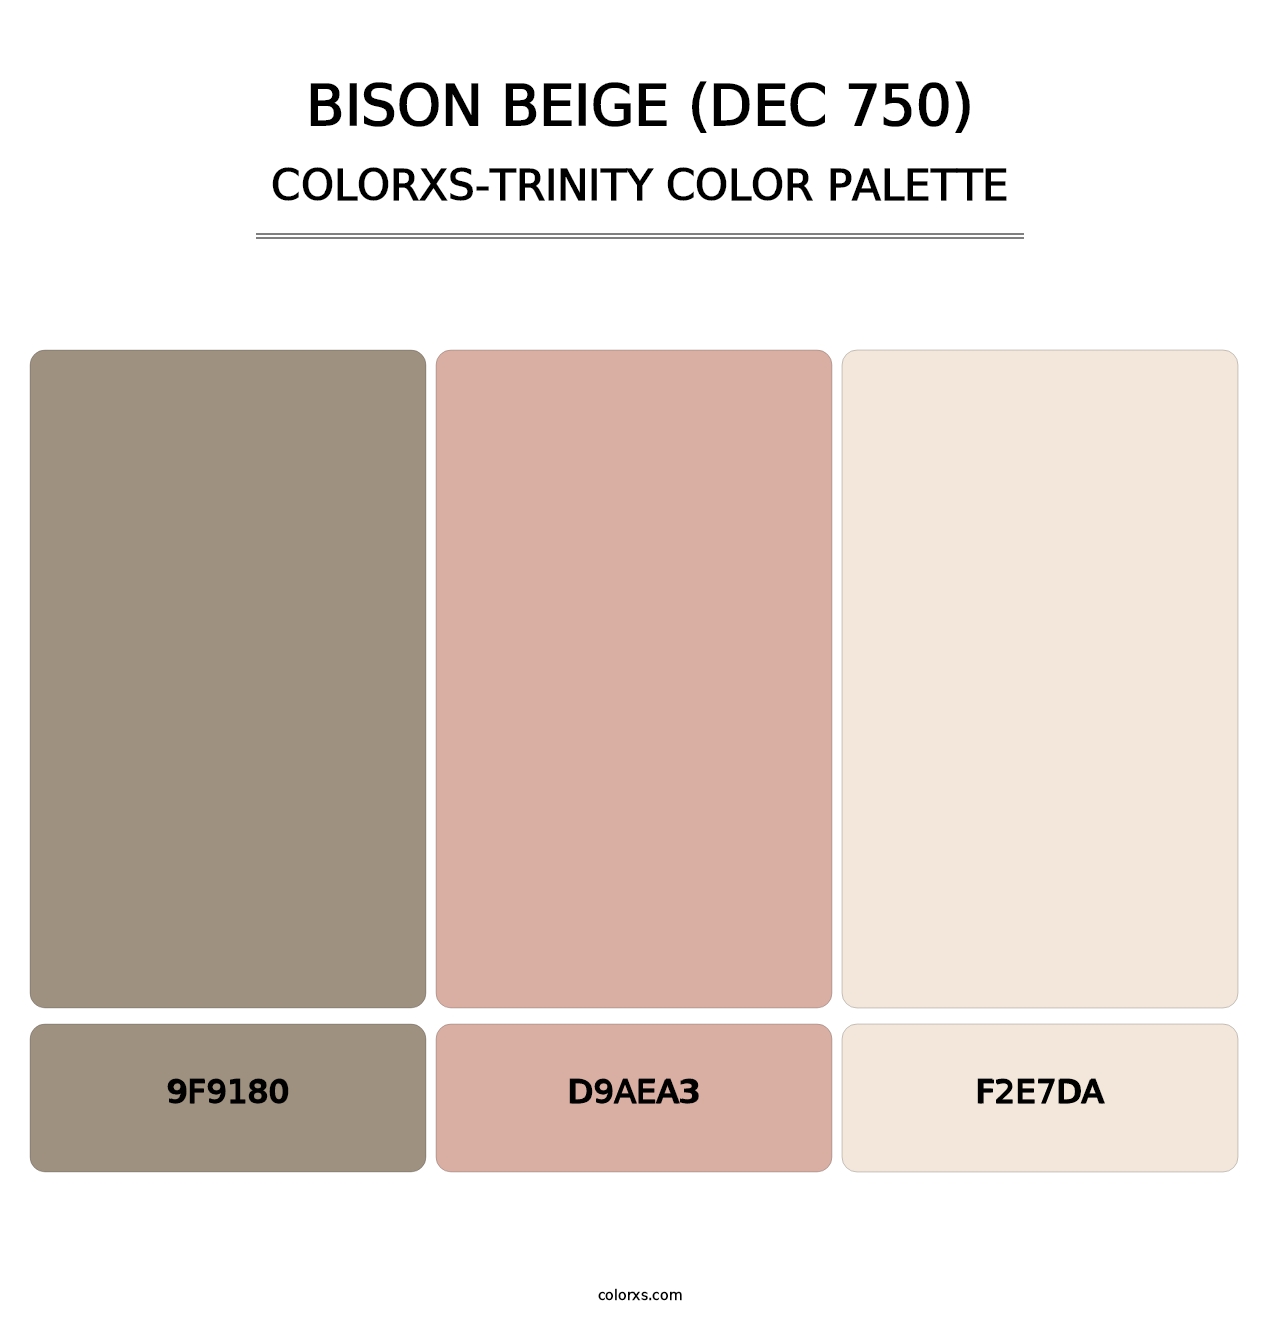 Bison Beige (DEC 750) - Colorxs Trinity Palette